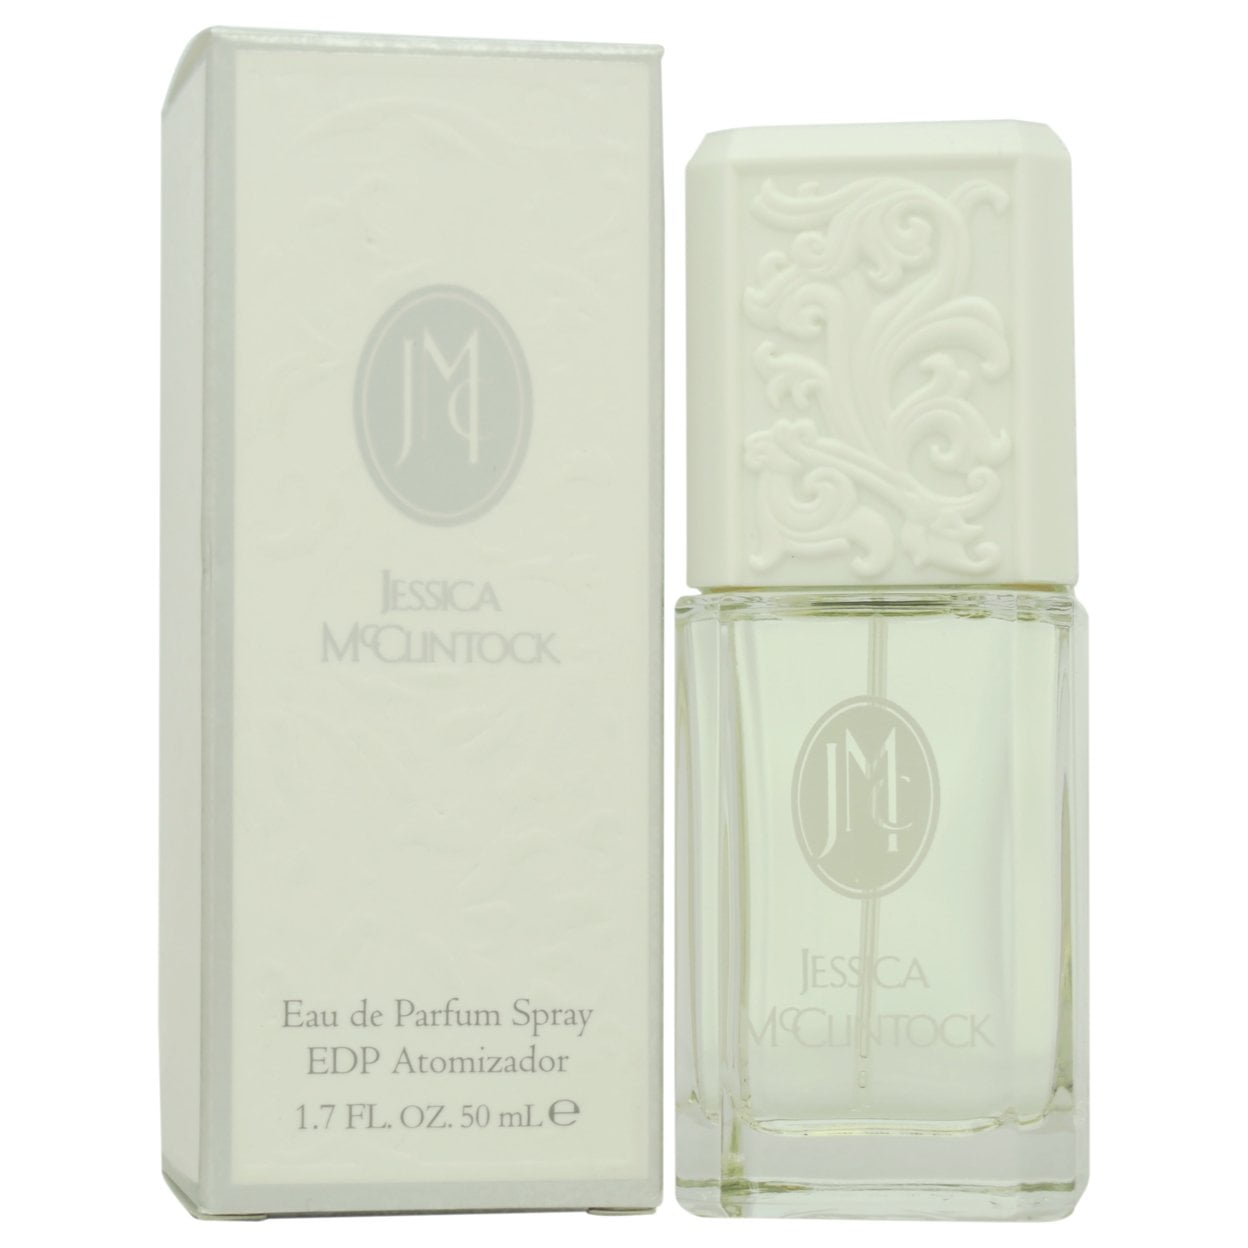 Jessica McClintock Eau de Parfum, Perfume for Women, 1.7 oz - Walmart.com